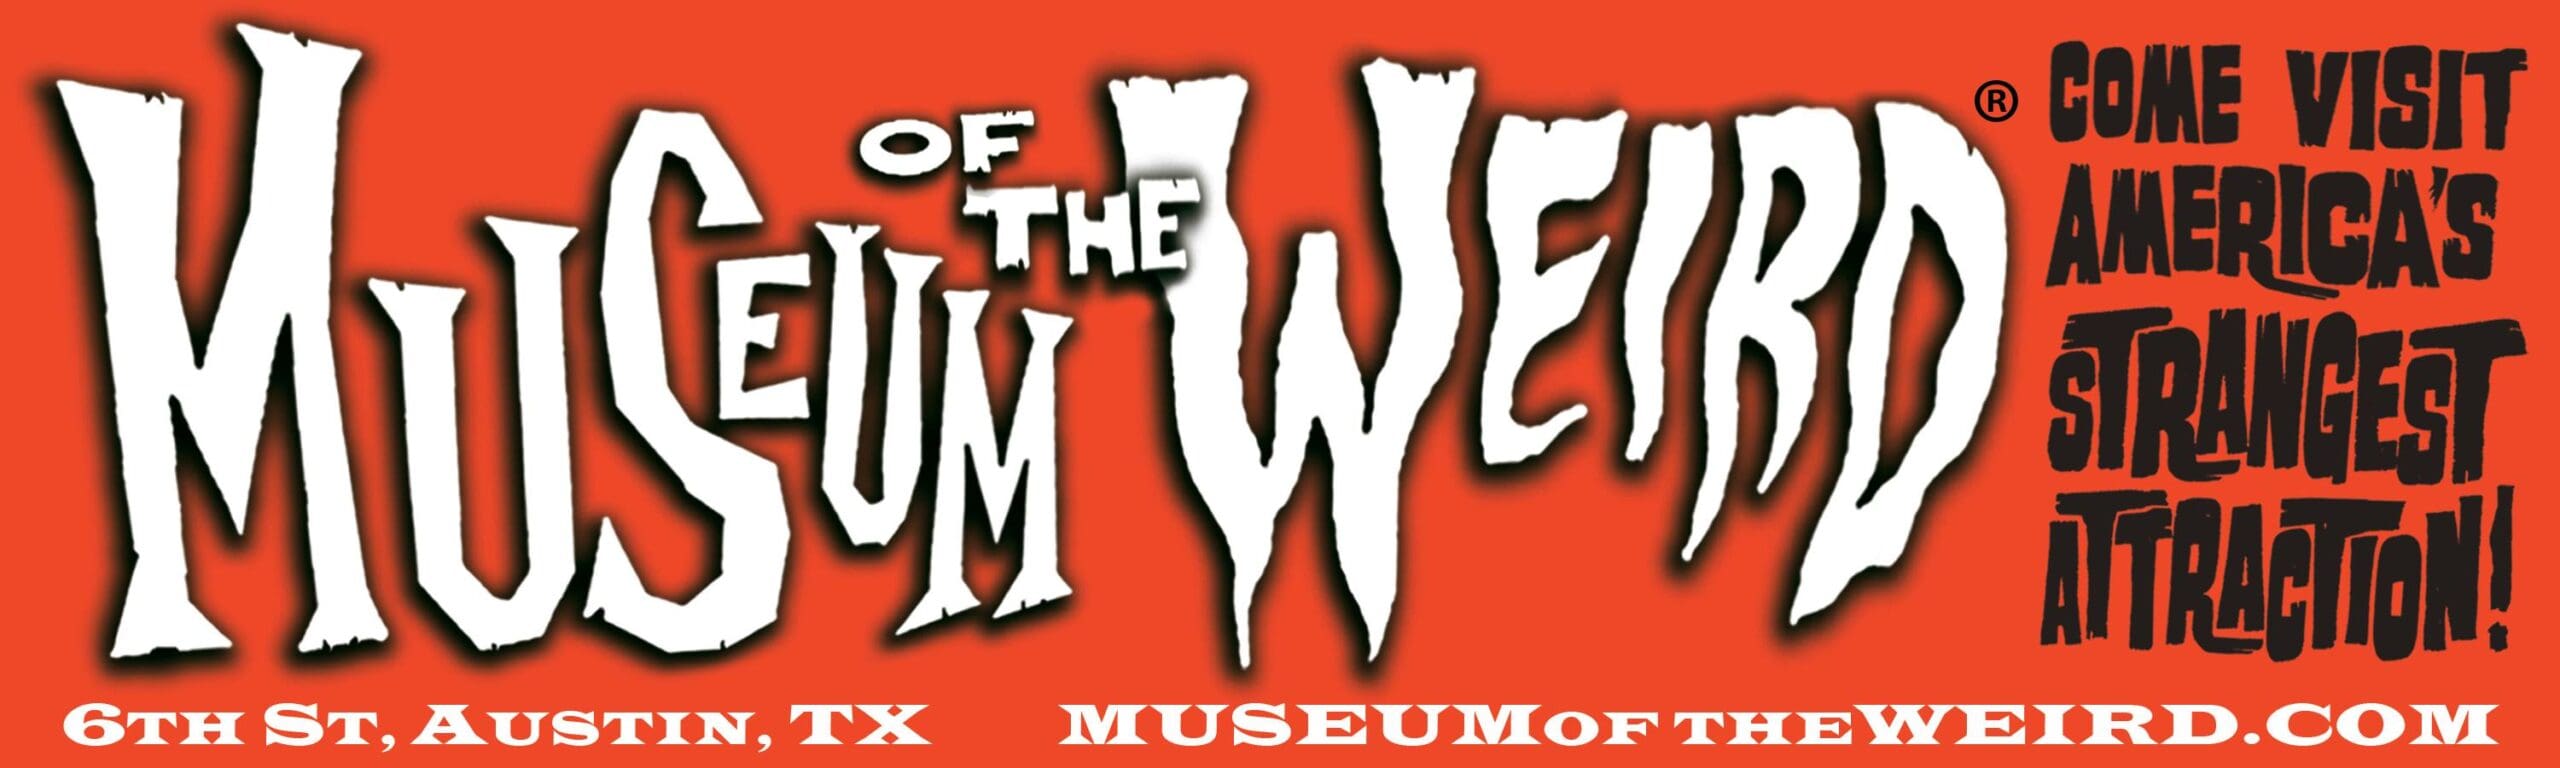 Museum of the Werid